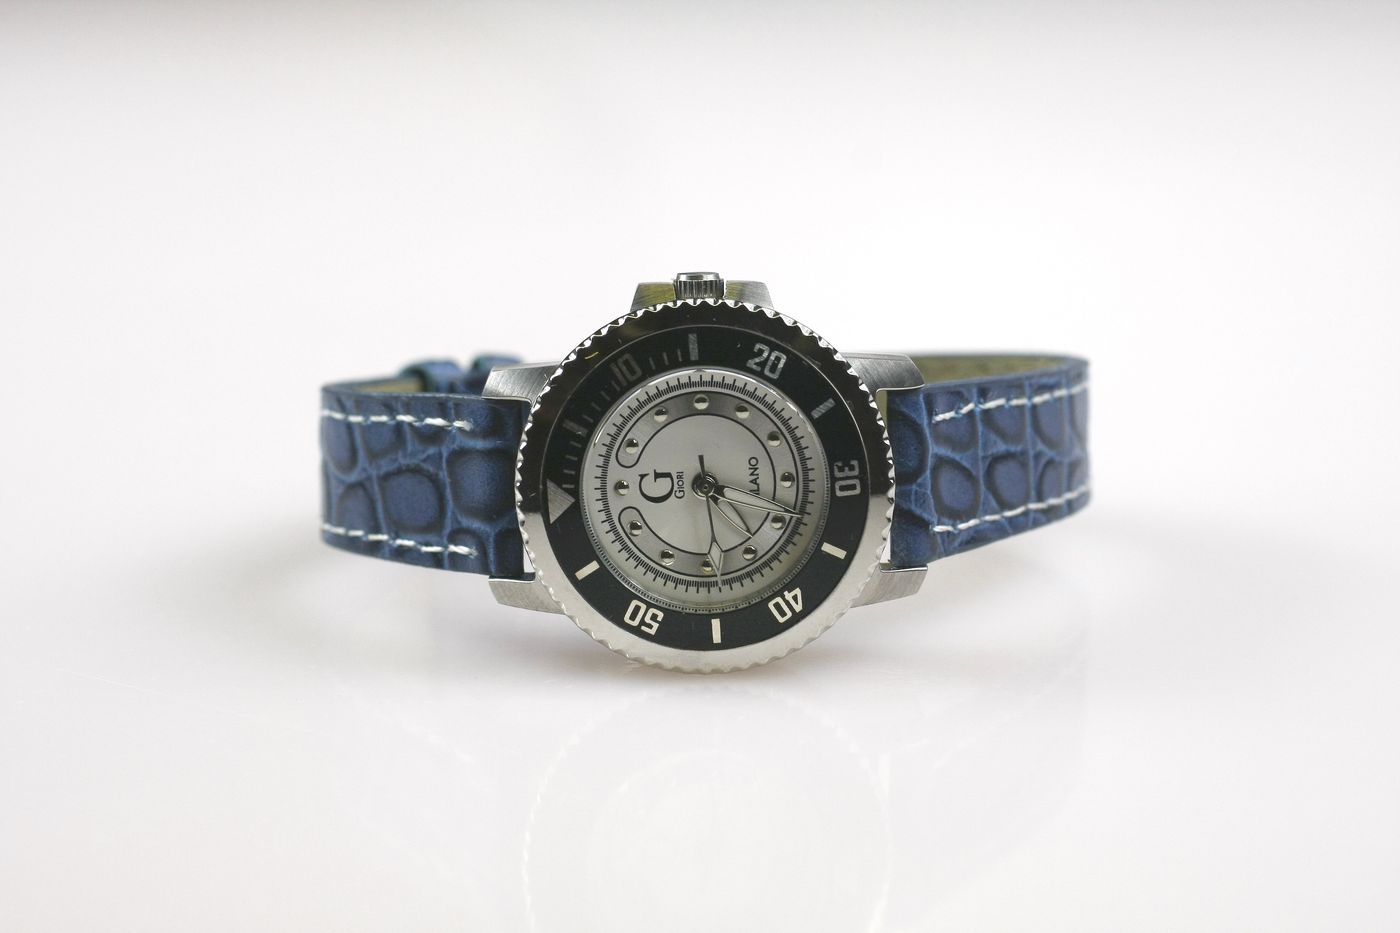 Dámské hodinky Giori Milano RS0208, stříbrno-černé